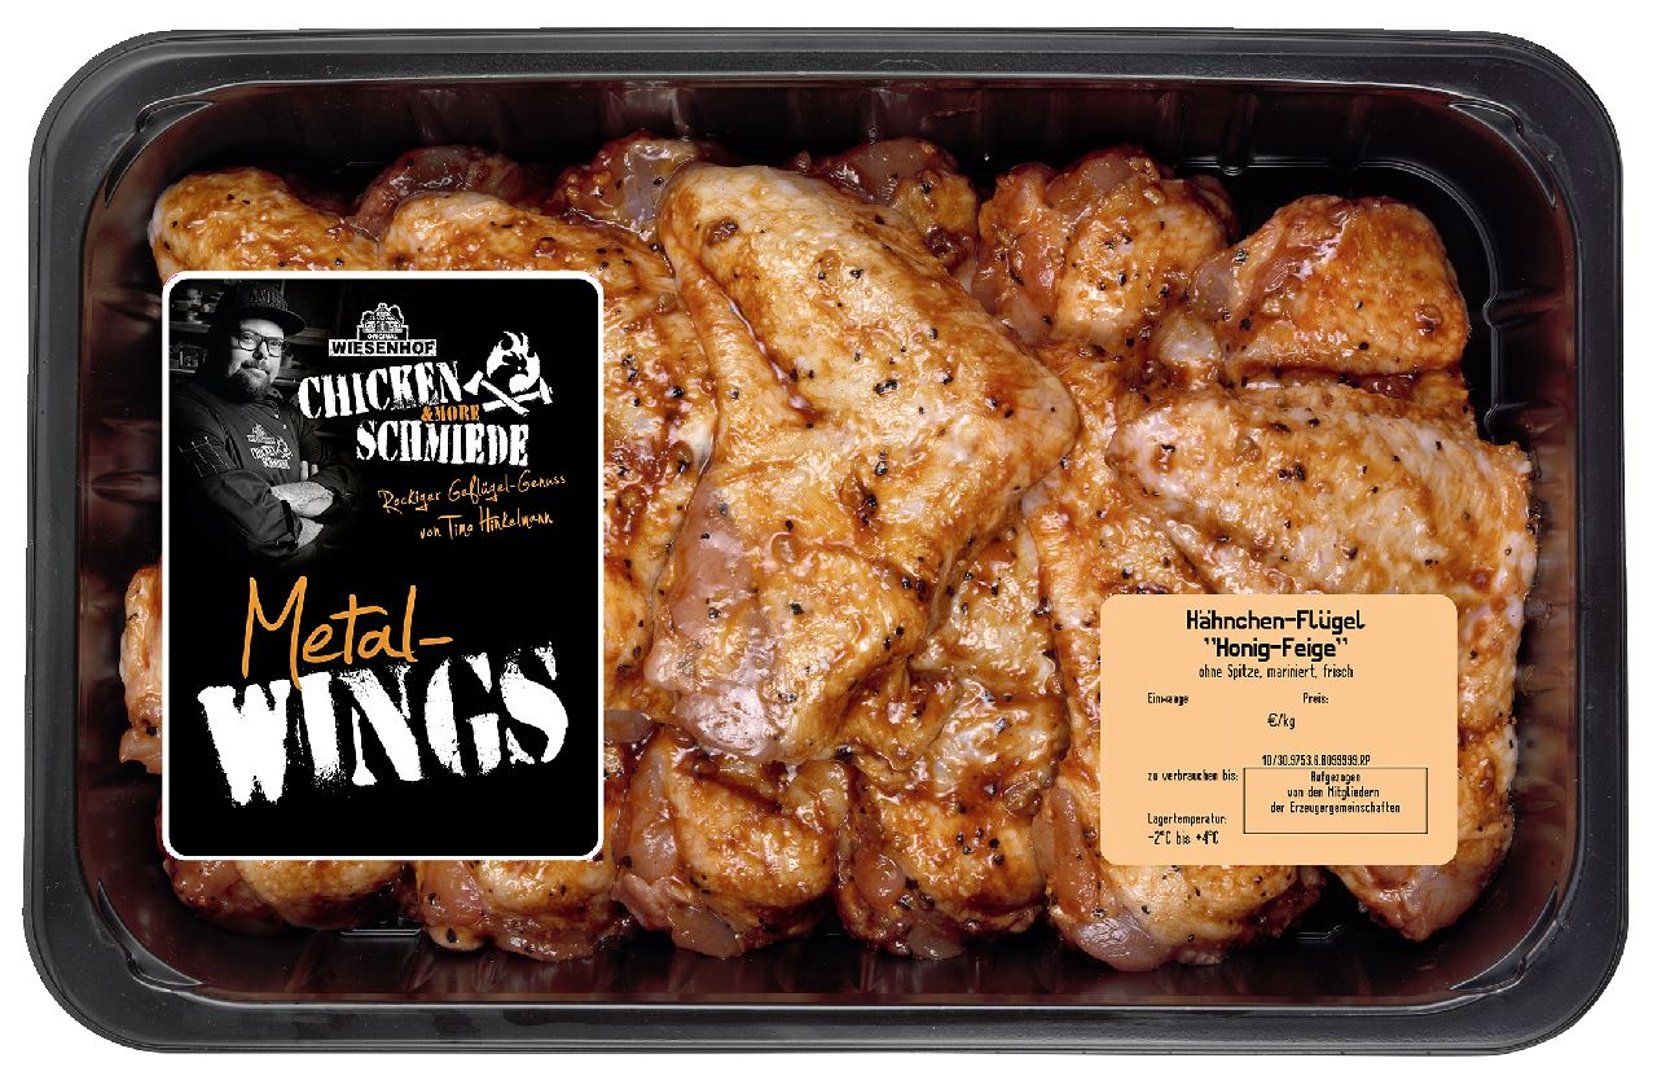 Wsh Chicken Schmiede - Metal Wings, Hähnchen - Flügel gekühlt gewürzt - 1 kg